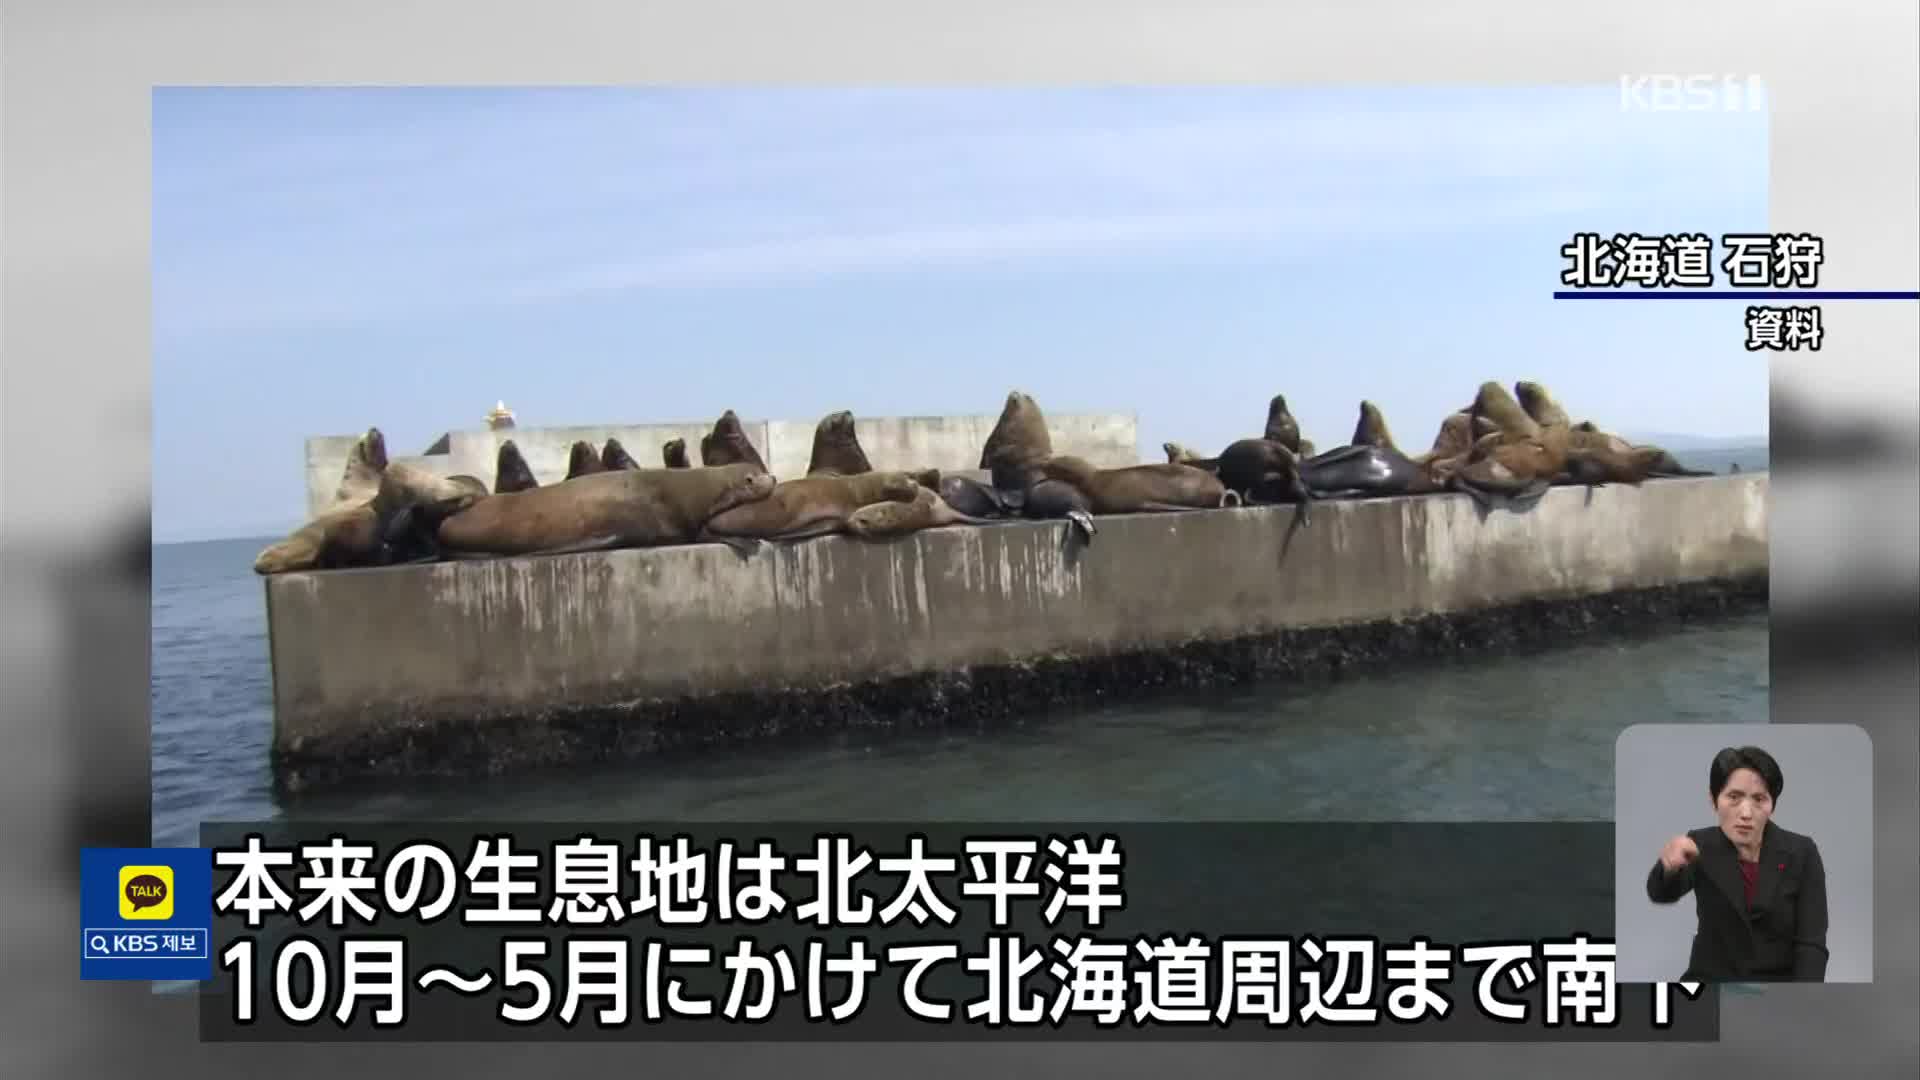 도쿄만에 나타난 바다사자…왜?